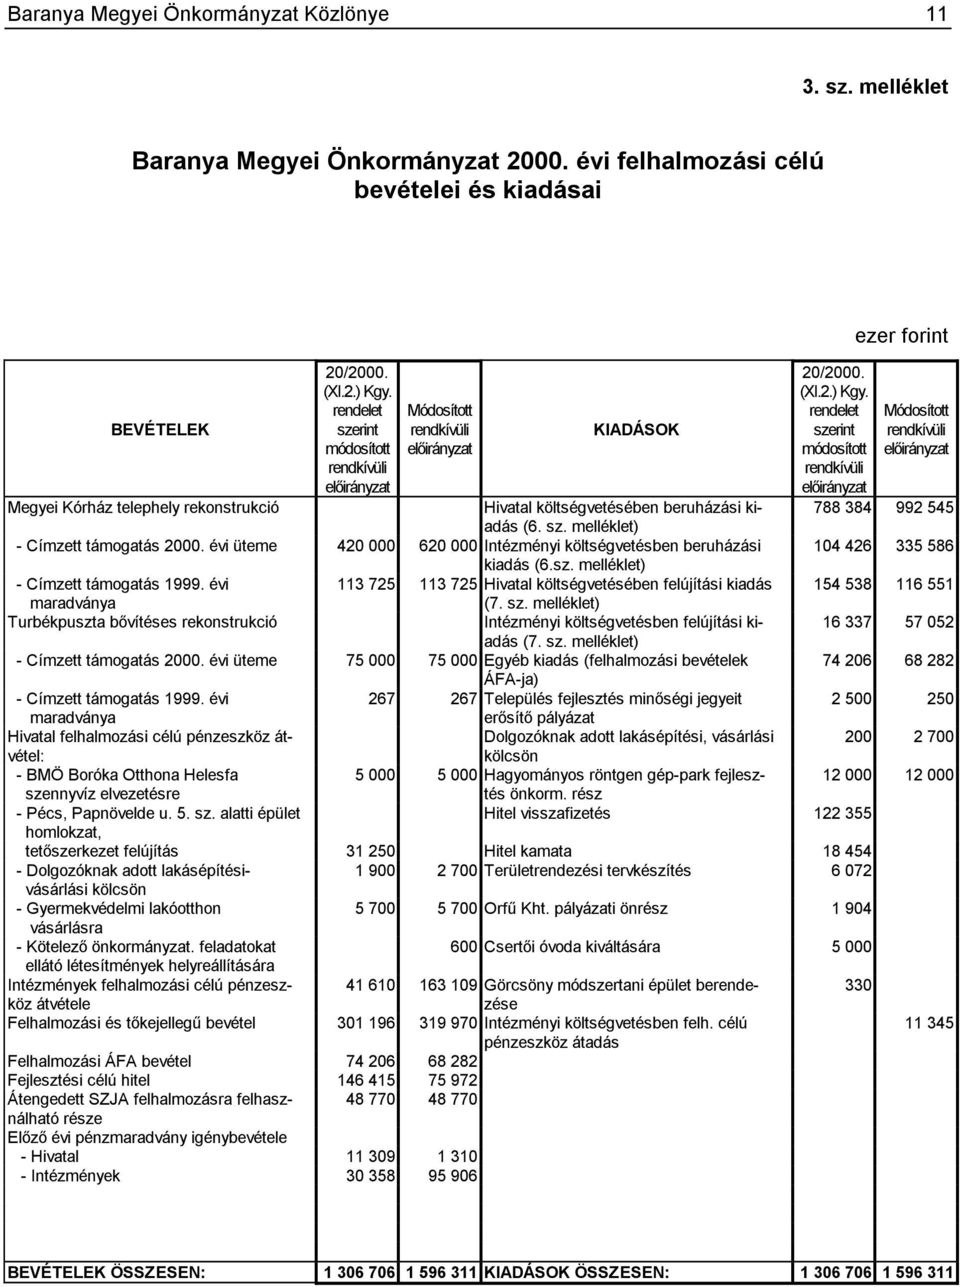 992 545 (6. sz. melléklet) - Címzett támogatás 2000. évi üteme 420 000 620 000 Intézményi költségvetésben beruházási 104 426 335 586 kiadás (6.sz. melléklet) - Címzett támogatás 1999.